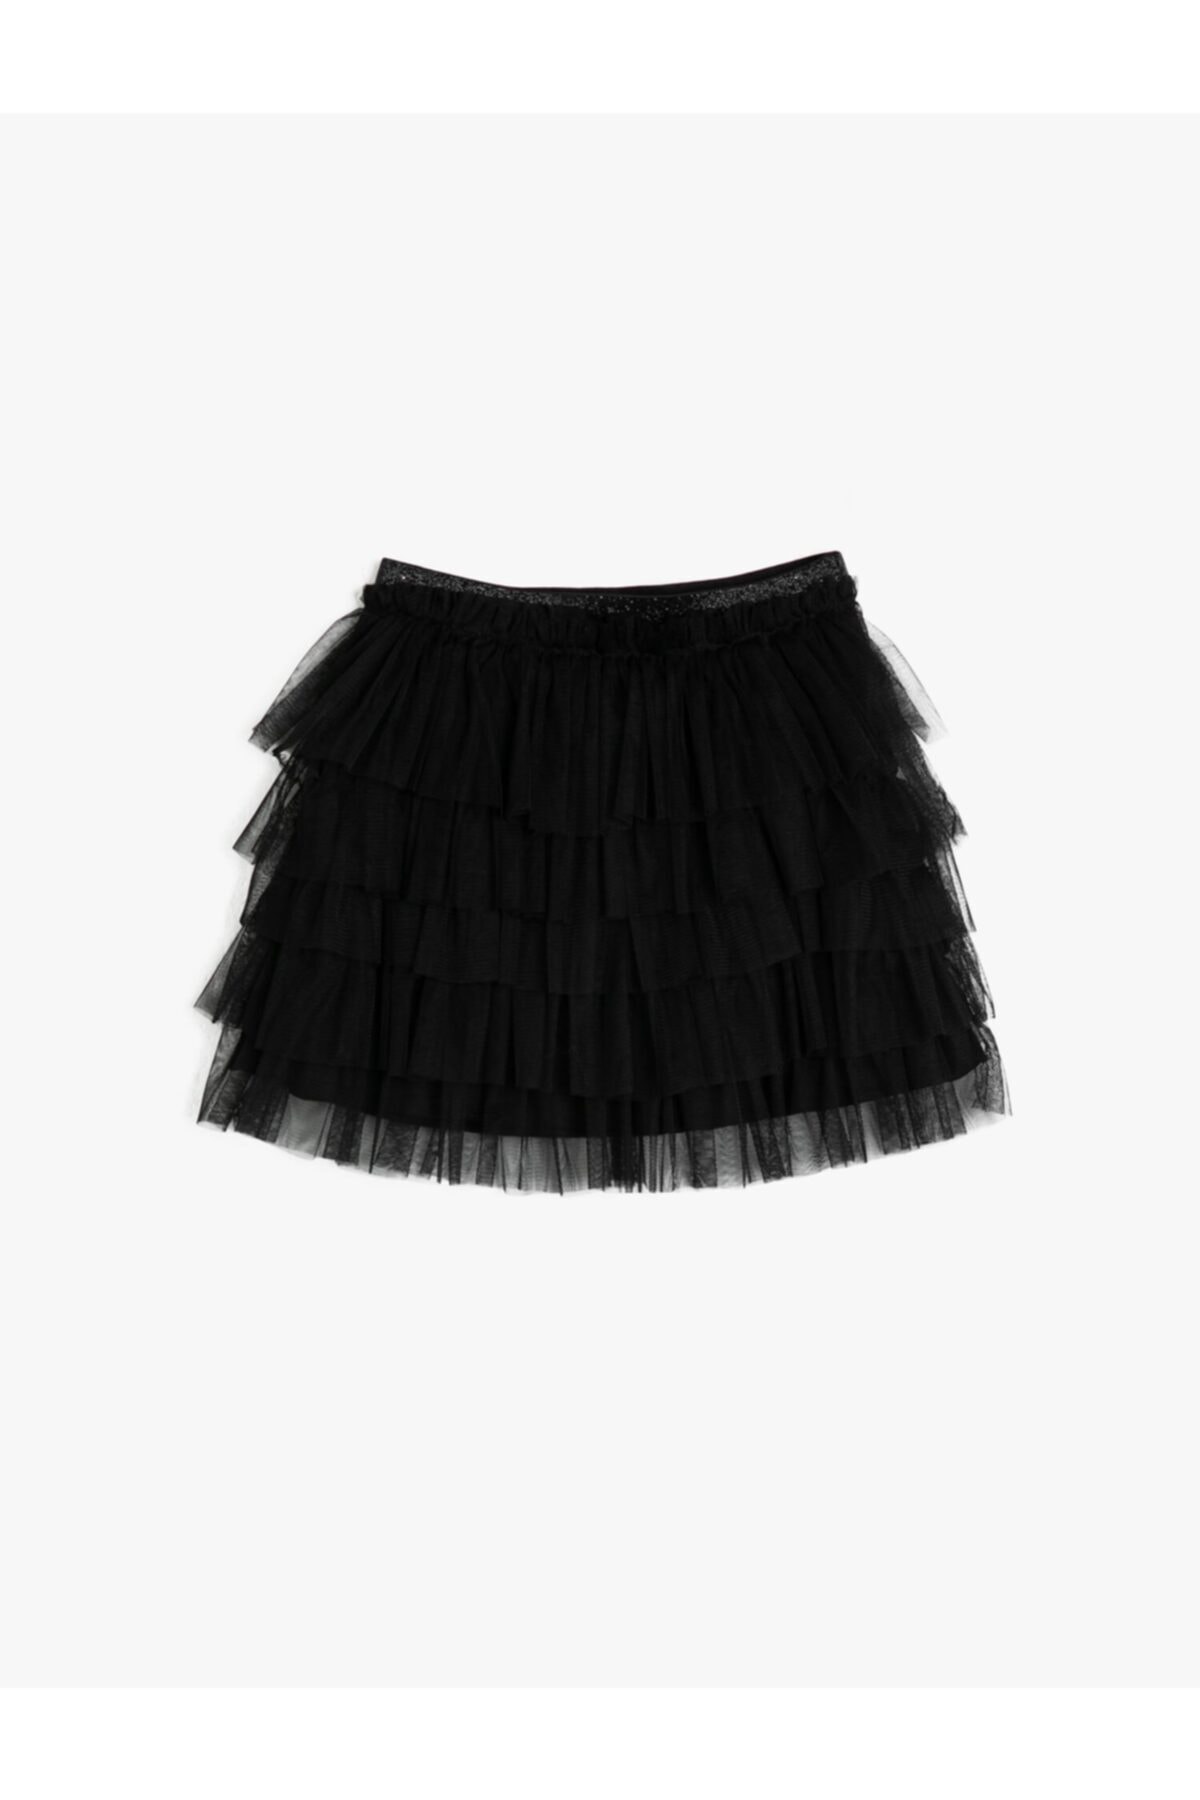 Koton Girls Black Skirt